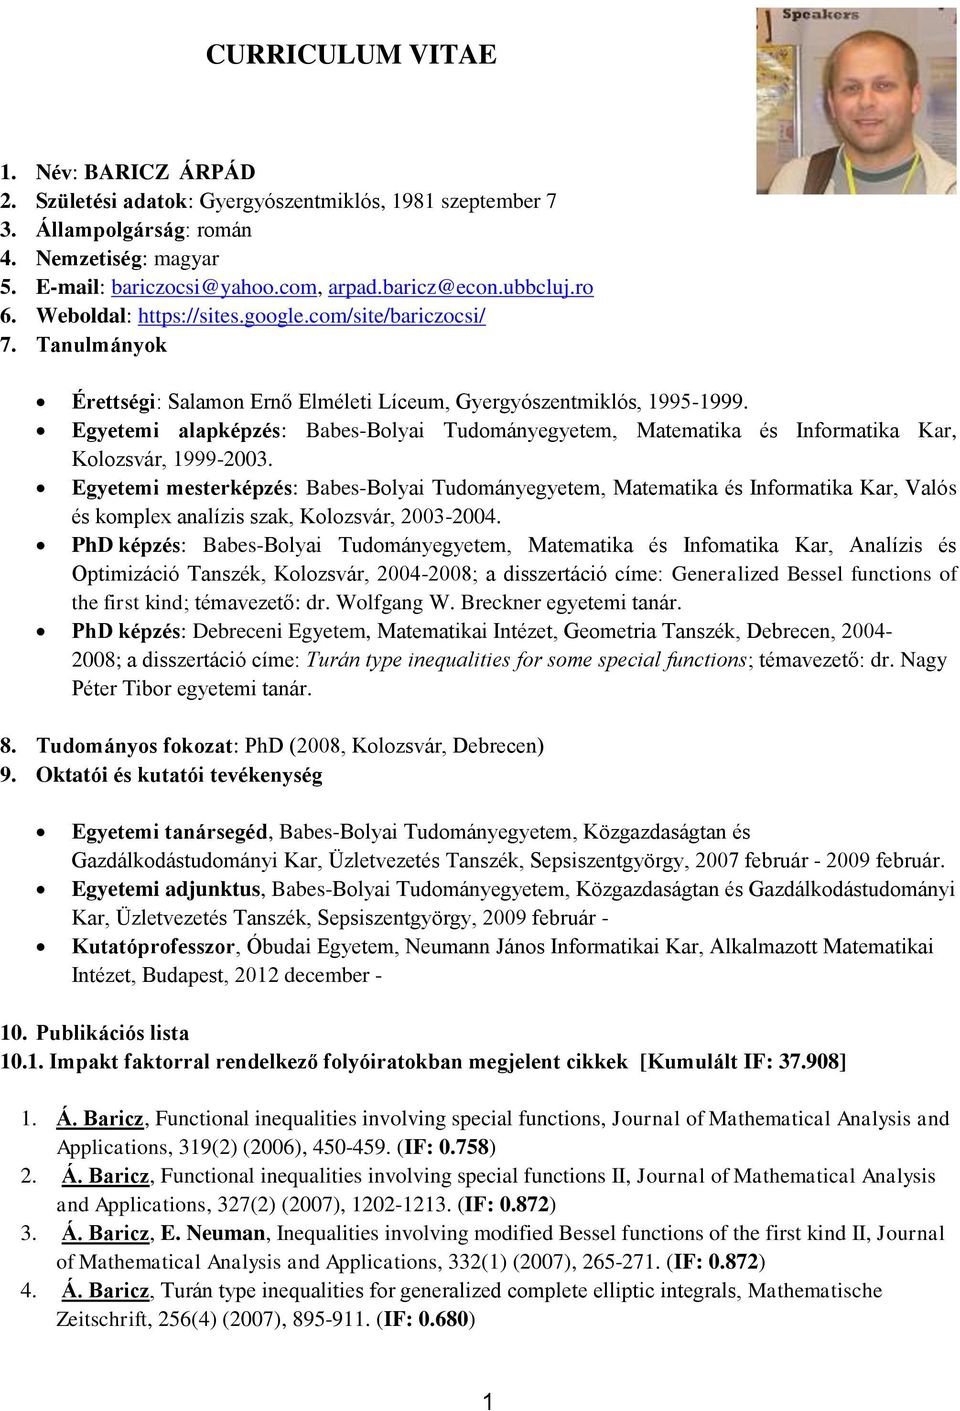 Egyetemi alapképzés: Babes-Bolyai Tudományegyetem, Matematika és Informatika Kar, Kolozsvár, 1999-2003.